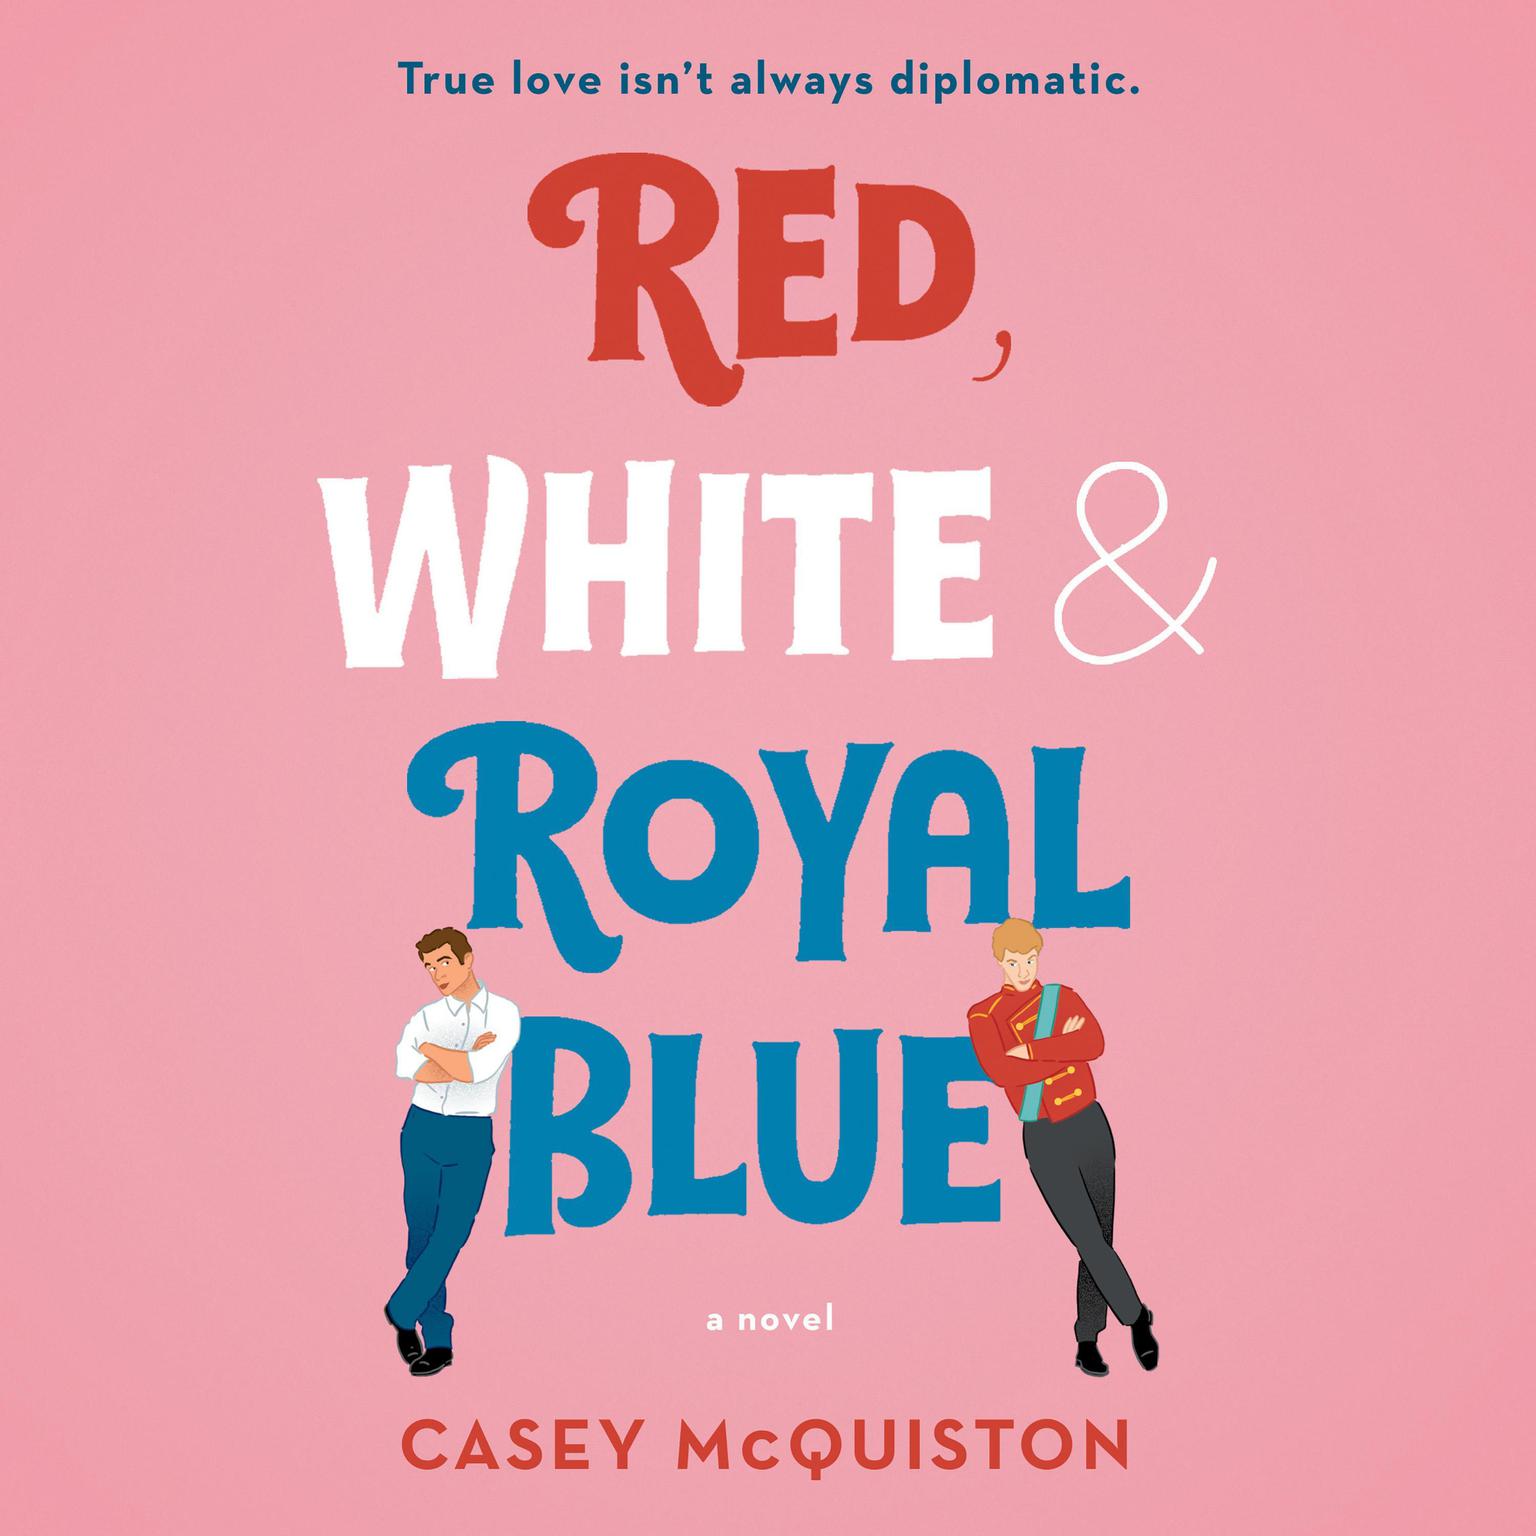 Casey McQuiston, Ramón de Ocampo: Red, White & Royal Blue (AudiobookFormat, 2019, St. Martin's)